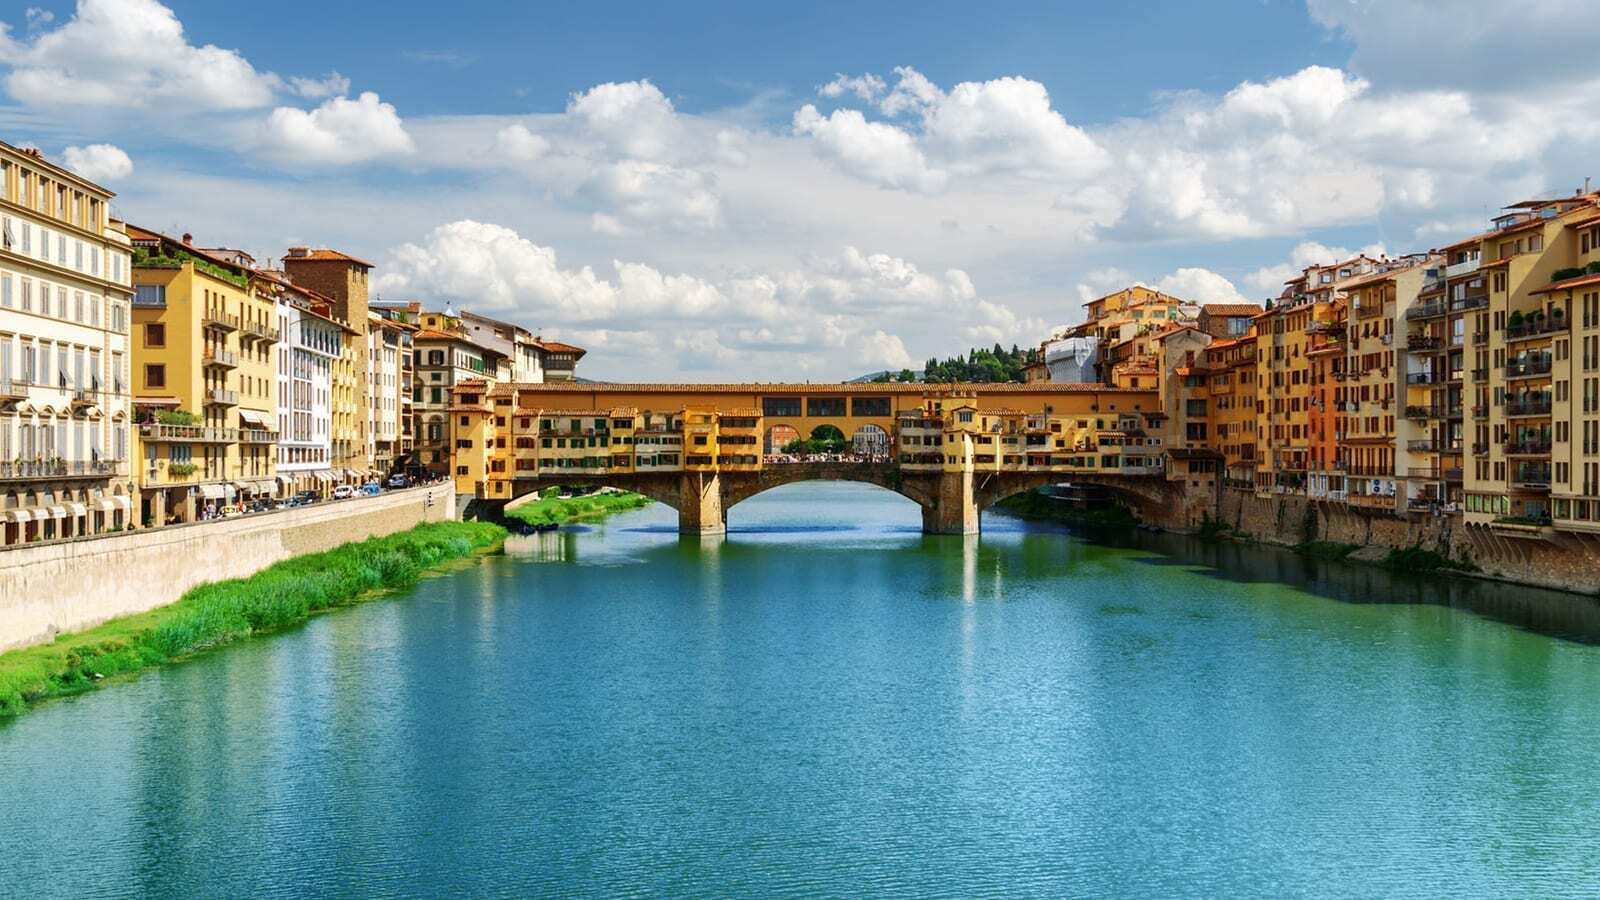 Vijf prachtige steden in Toscane